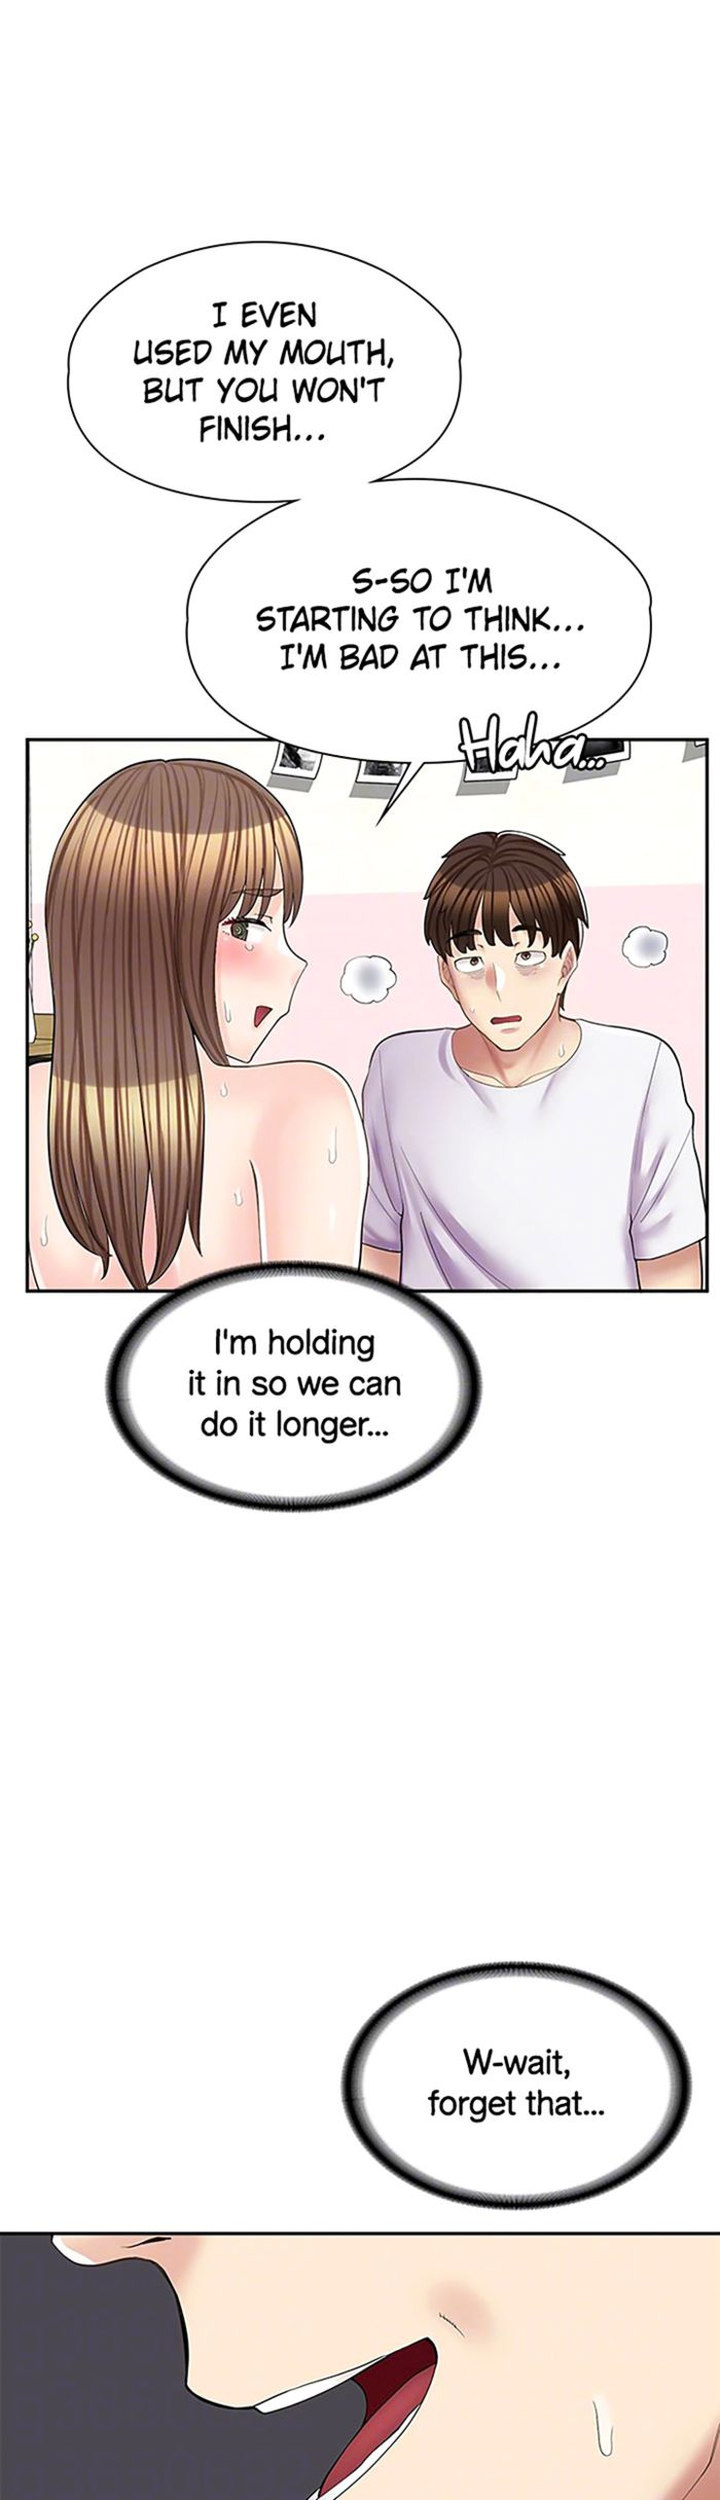 The image Erotic Manga Café Girls - Chapter 15 - 34221c44bfe4762d42 - ManhwaManga.io